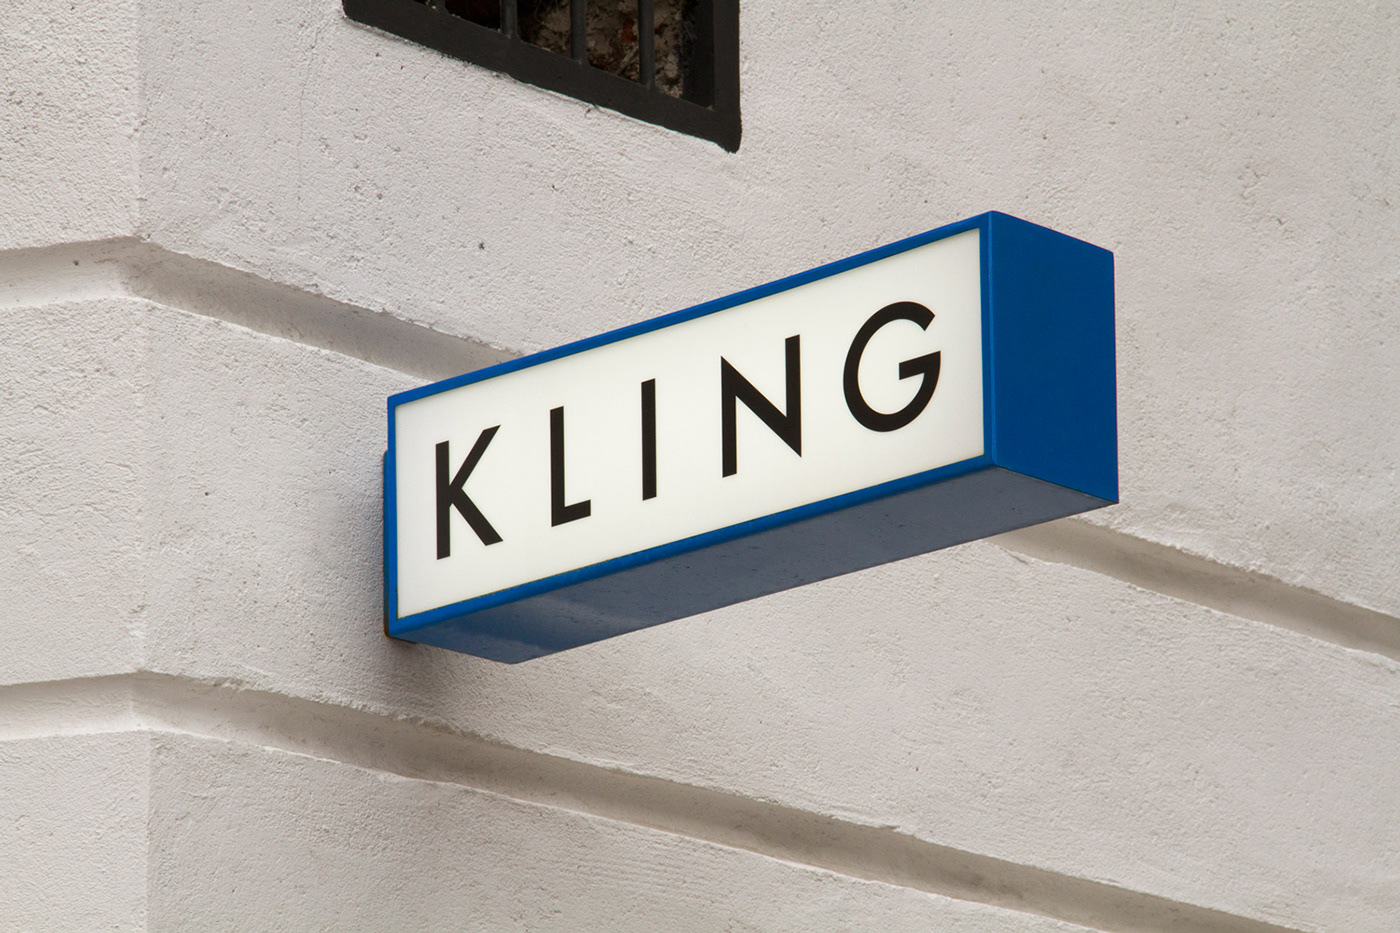 KLING - branding